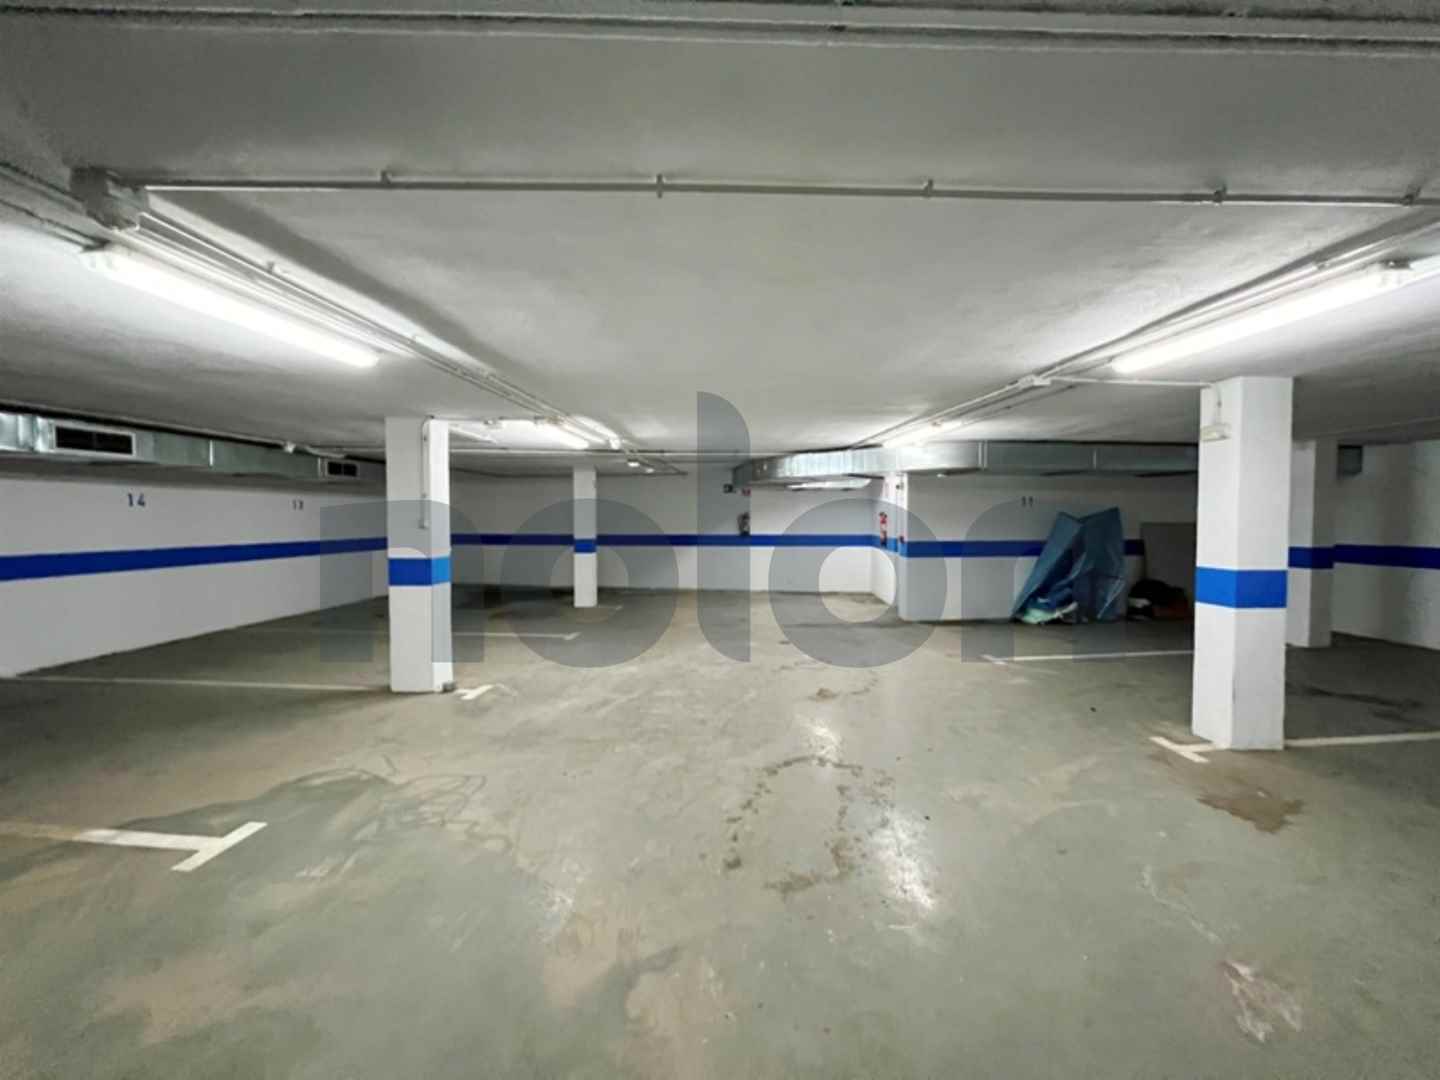 Venta plazas de garajes desde 5000 €uros Ronda Málaga